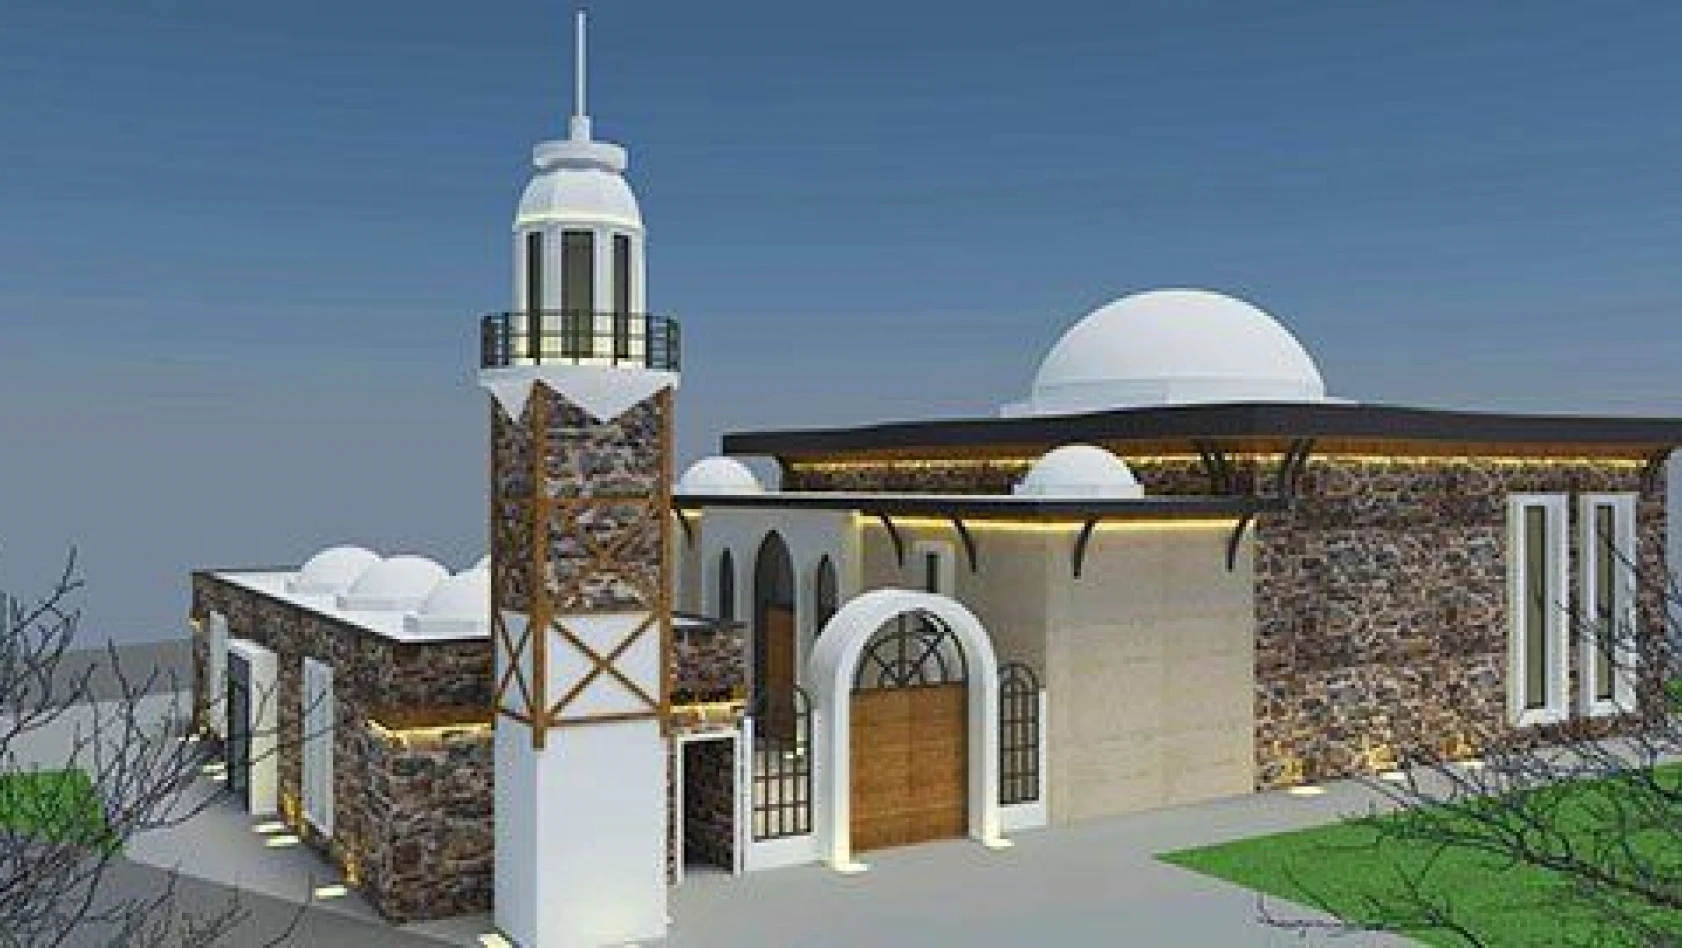 Erenköy'de Saçmacı Cami'nin temeli atılacak